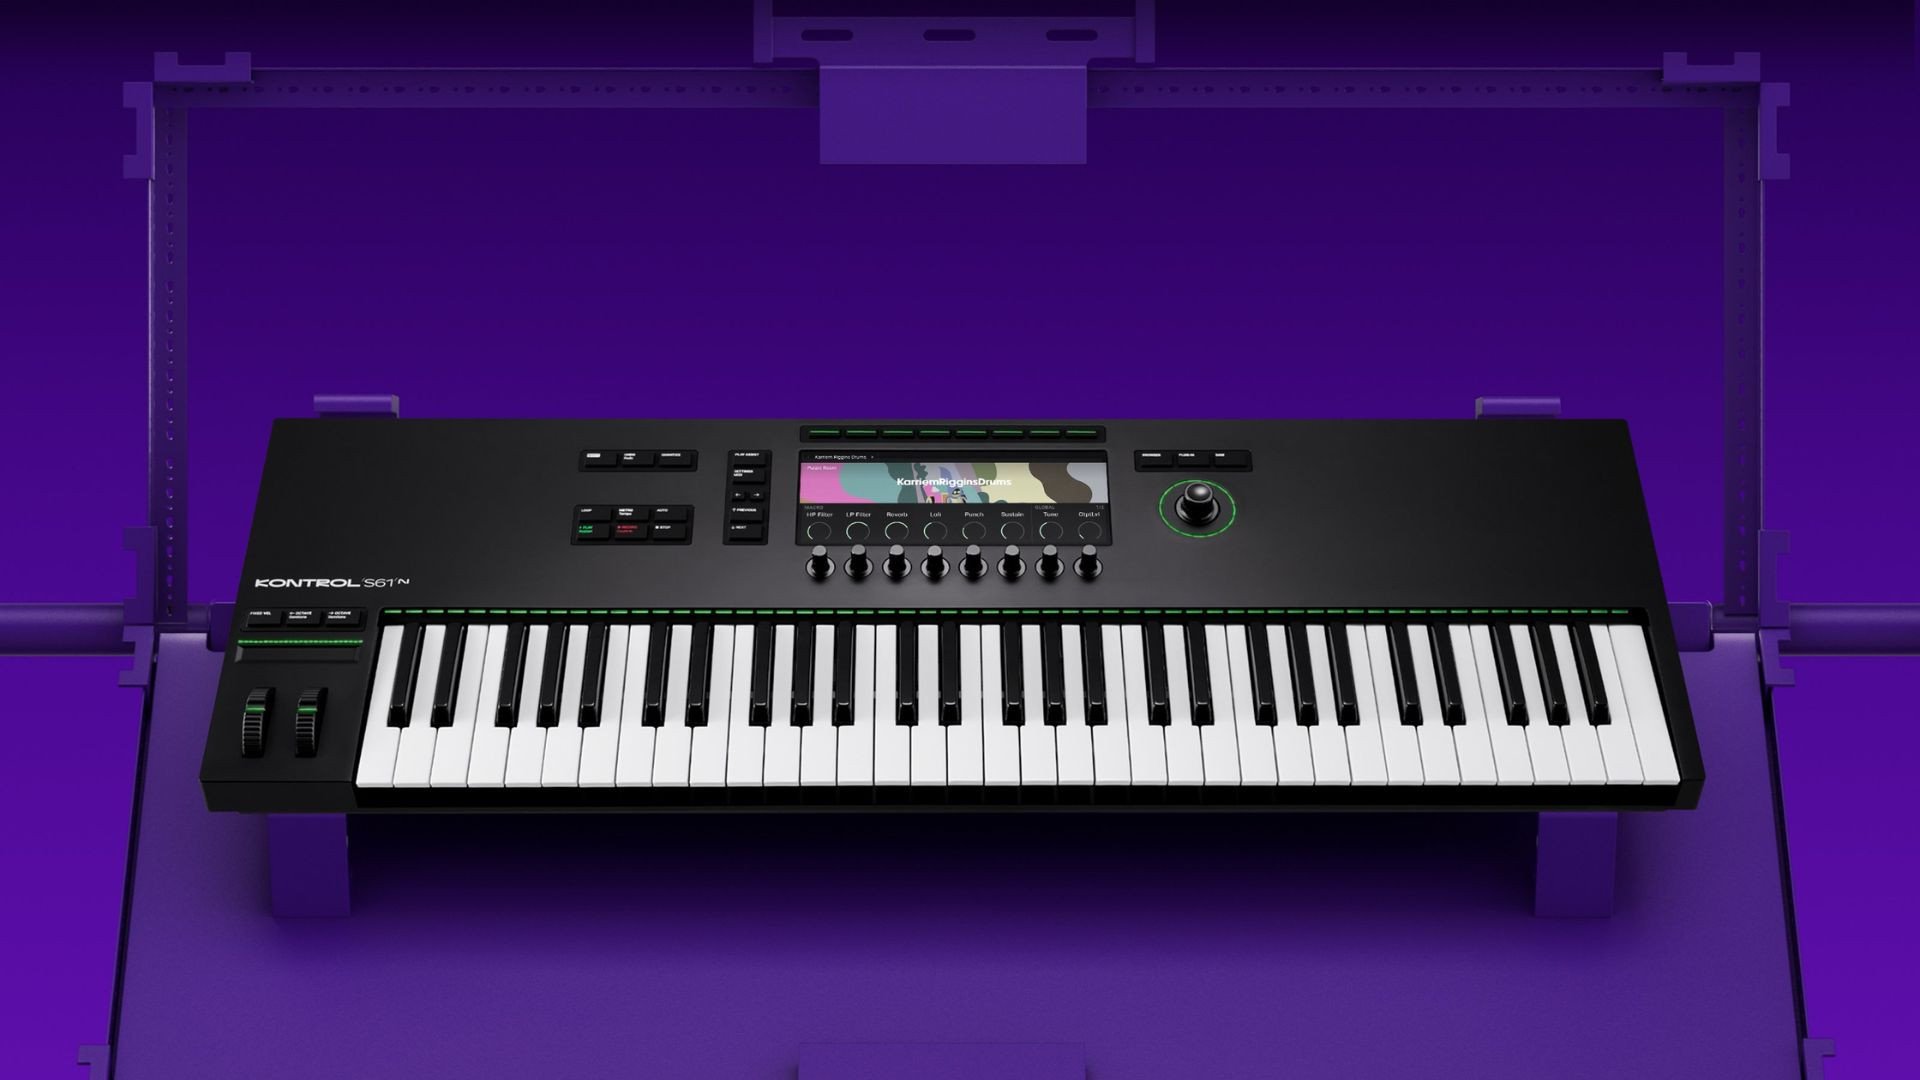 Niezrównane możliwości wyrazu: nowy wymiar tworzenia muzyki z kontrolerami Native Instruments z serii S MK3